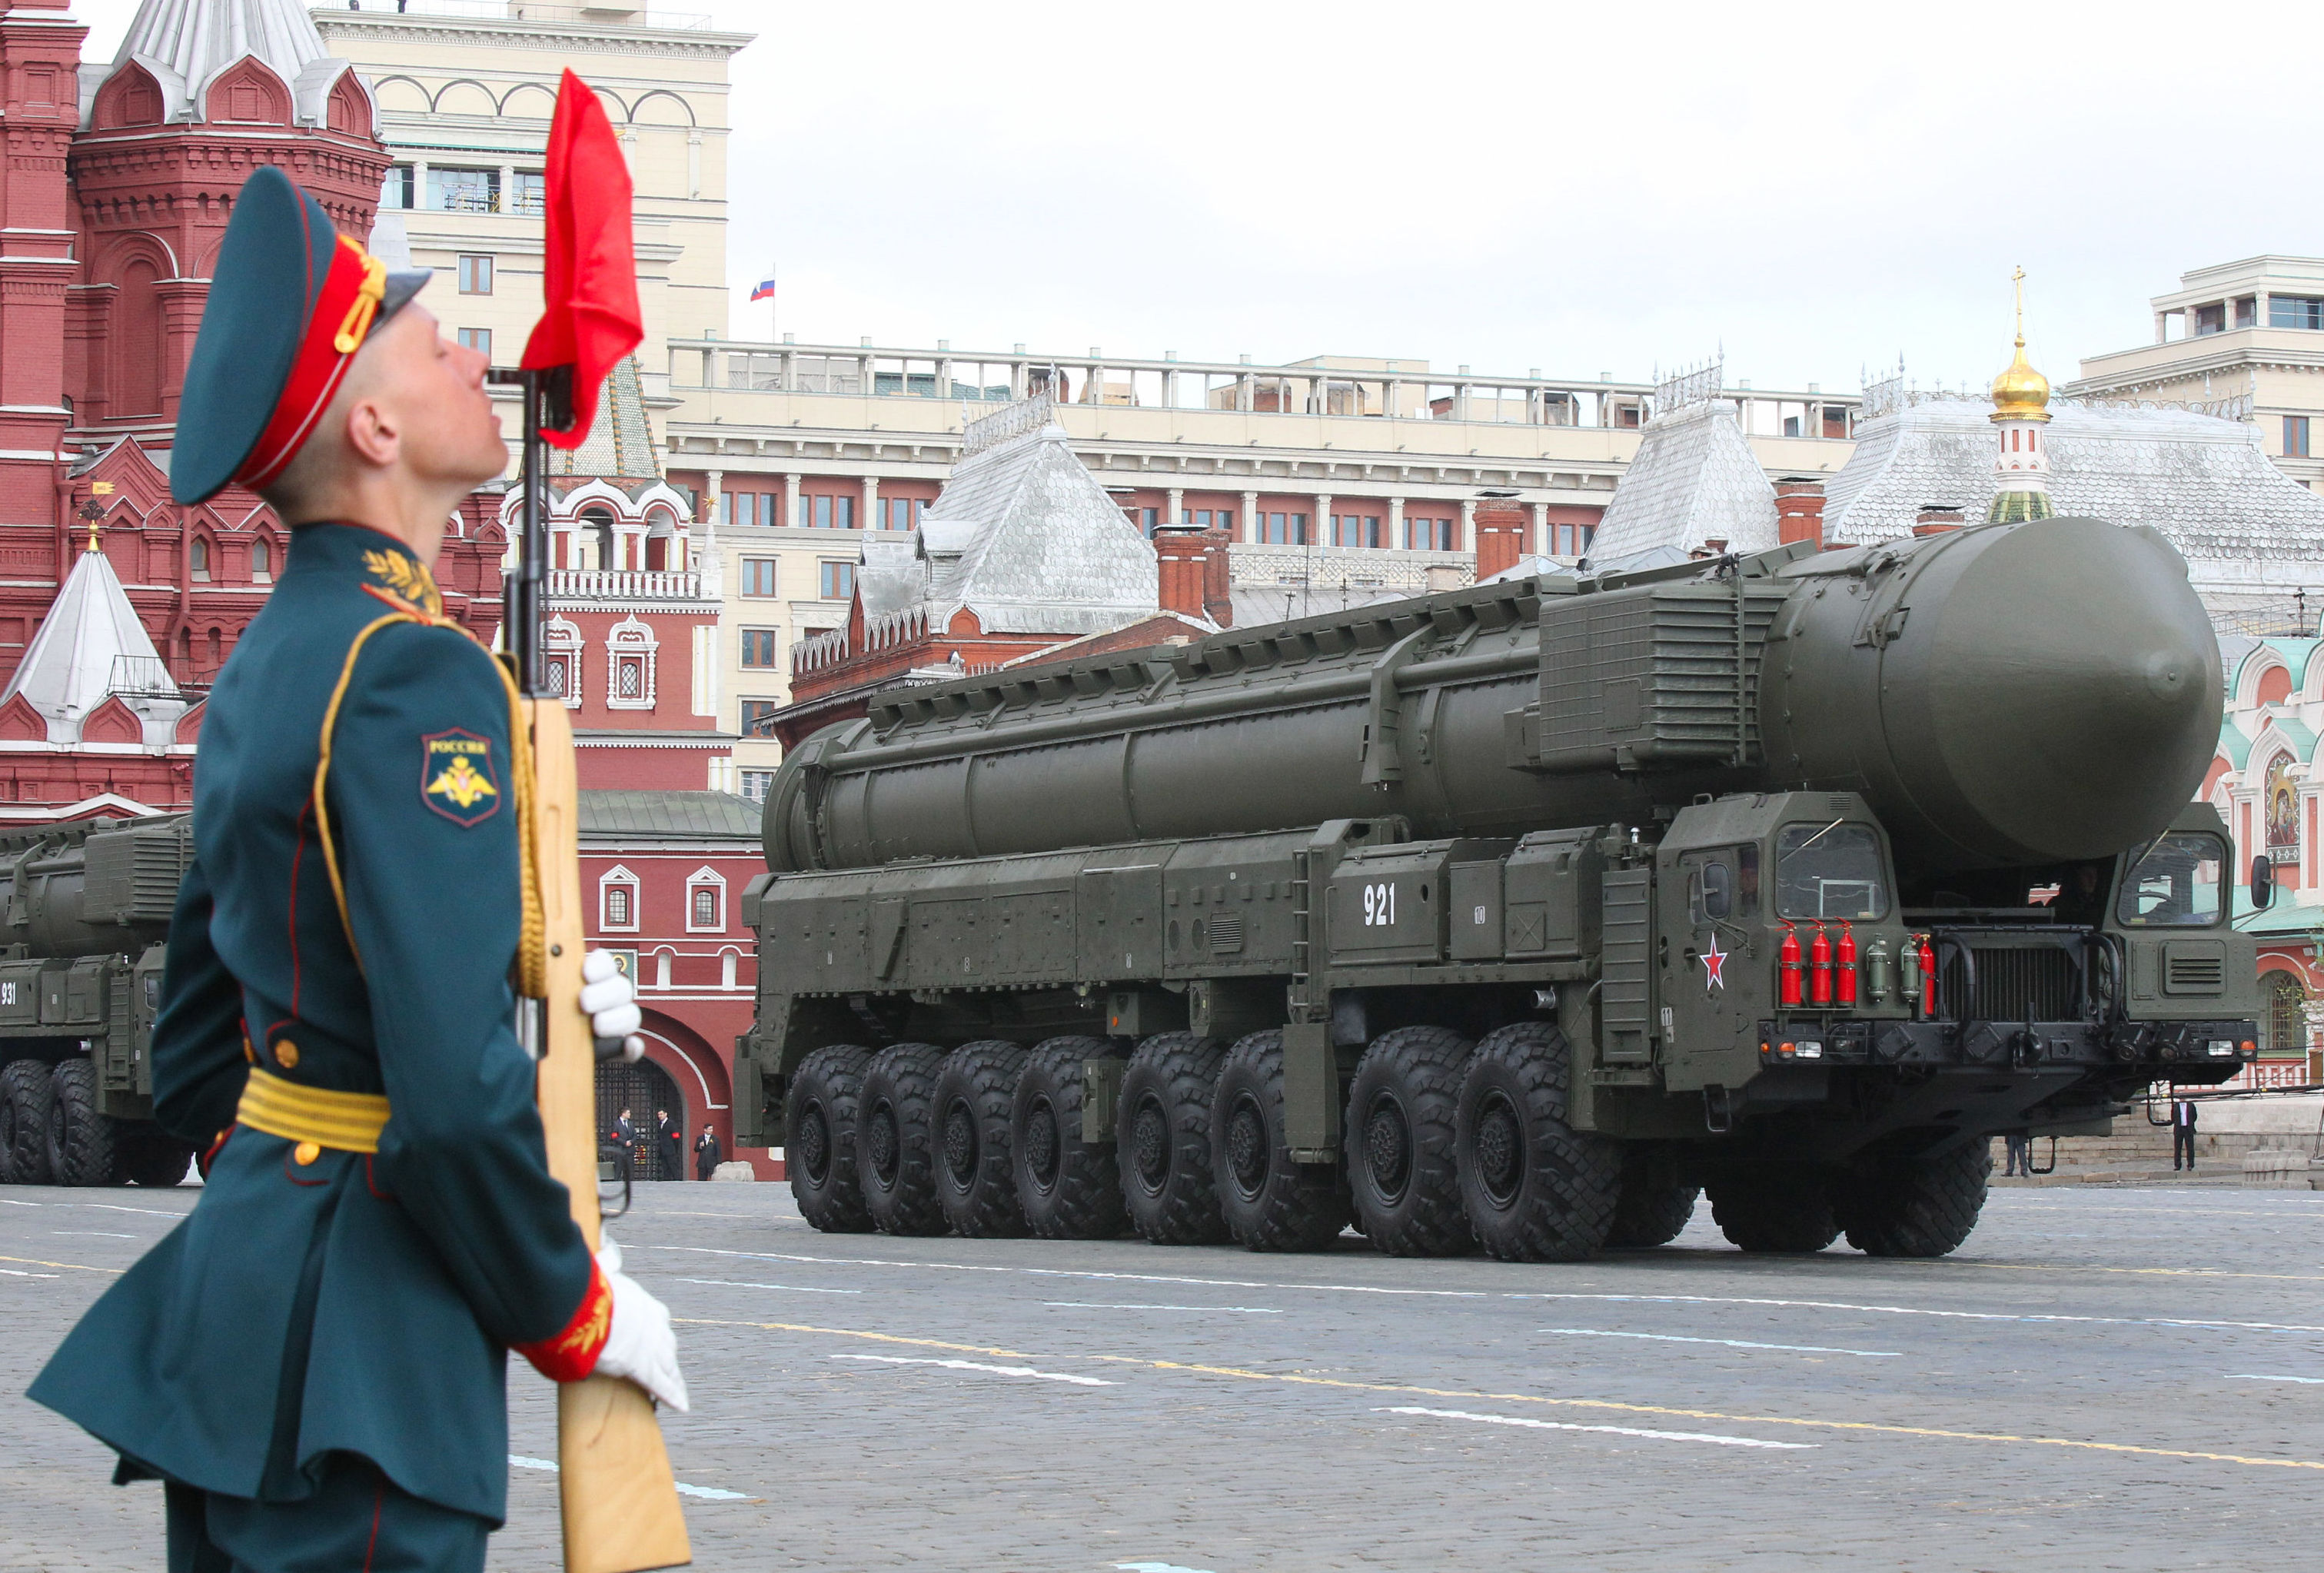 Пусковая установка подвижного грунтового ракетного комплекса ПГРК "Тополь-М" проходит в колонне по Красной площади Москвы во время военного парада